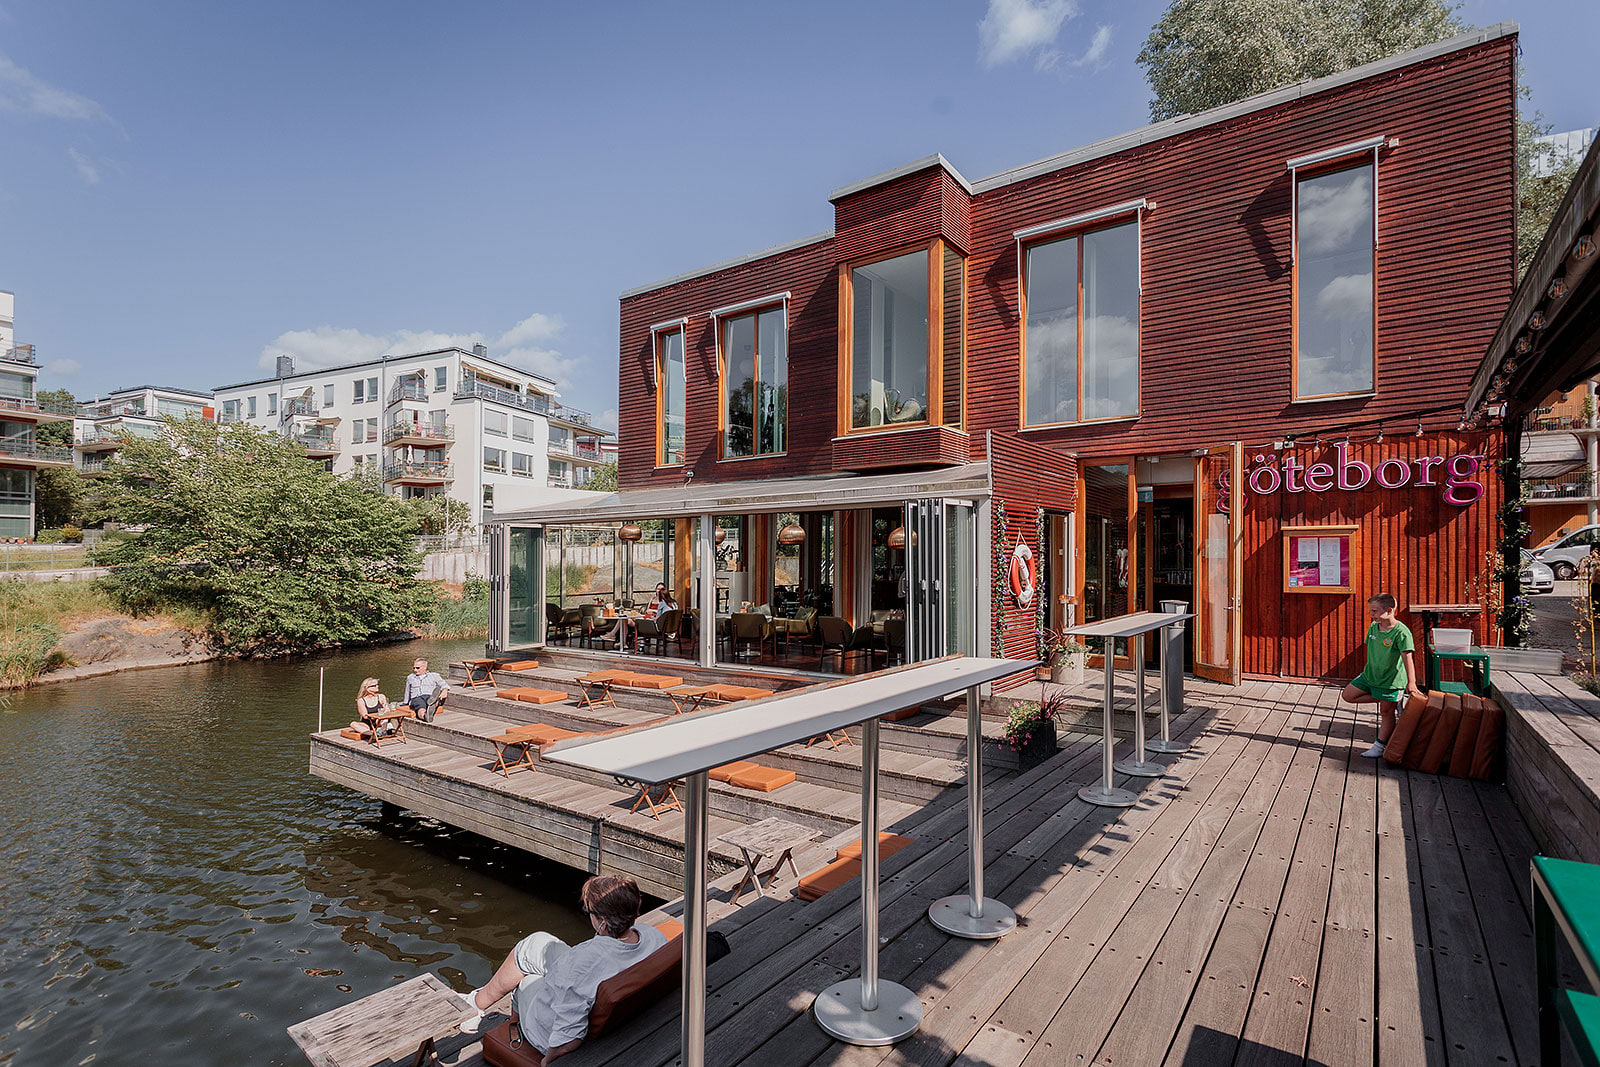 Restaurang Göteborg – Uteserveringar i Hammarby sjöstad